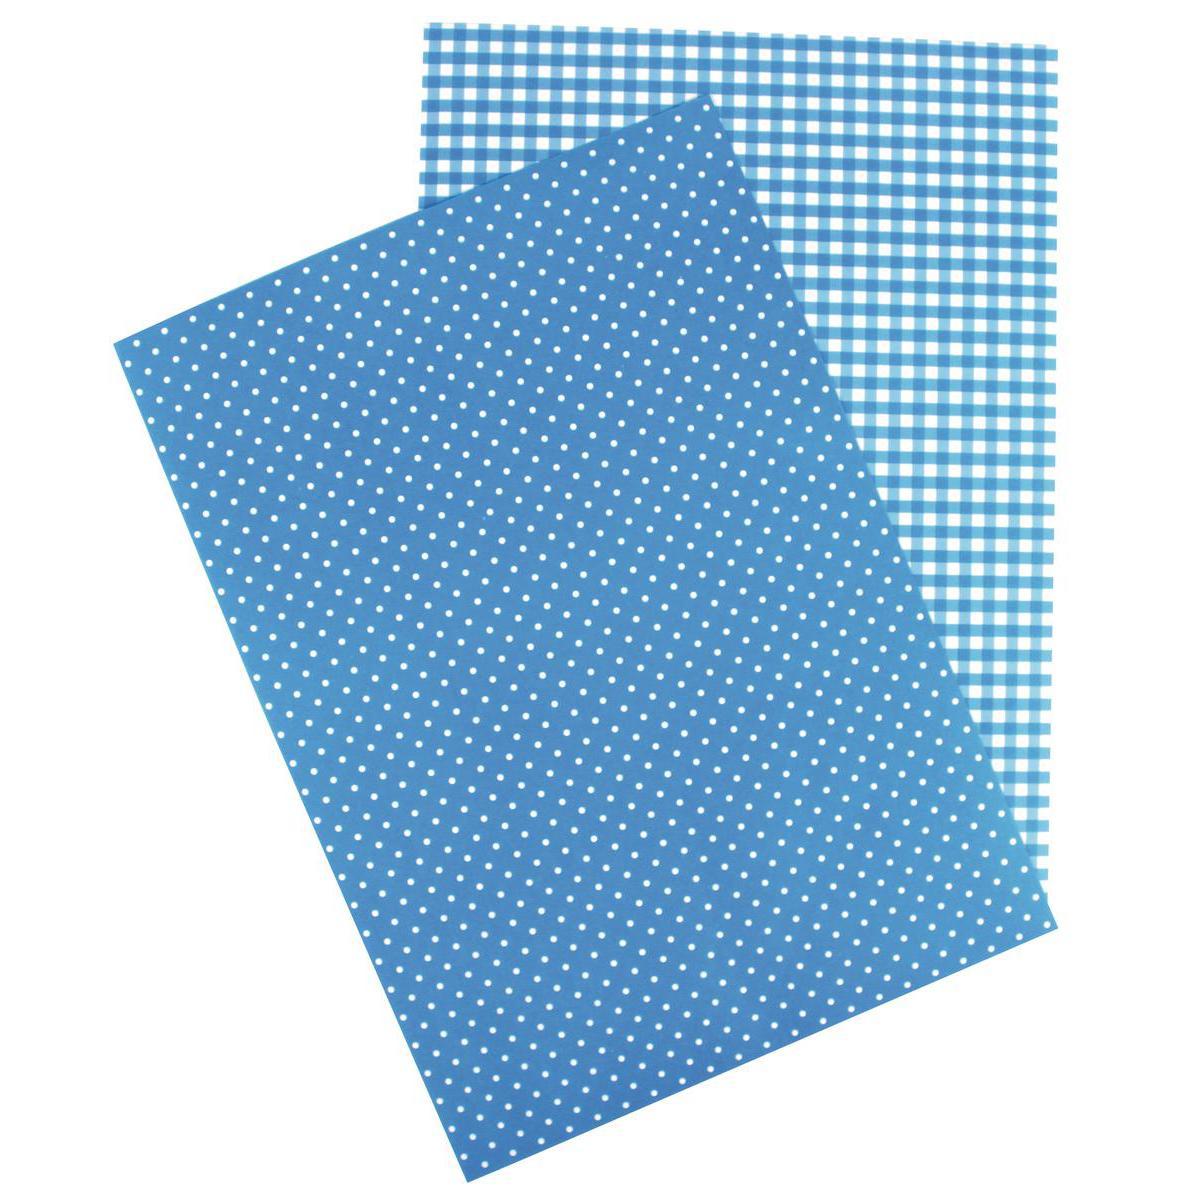 Feuille A4 autocollante - Papier - 21 x 29,7 cm - Bleu